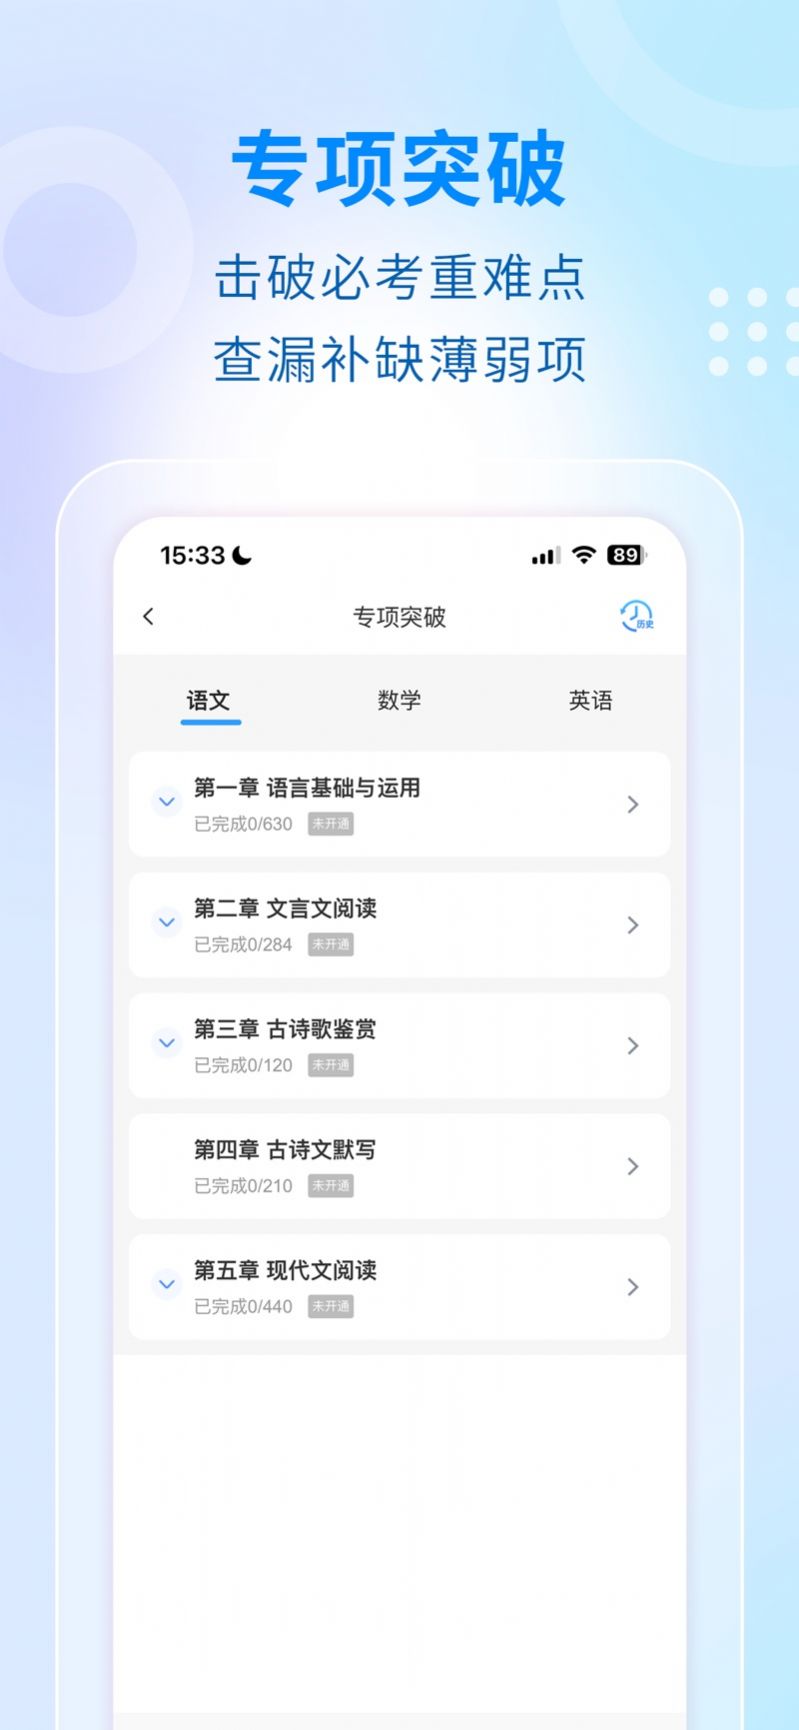 学考云课堂下载app官方最新版安装图片5